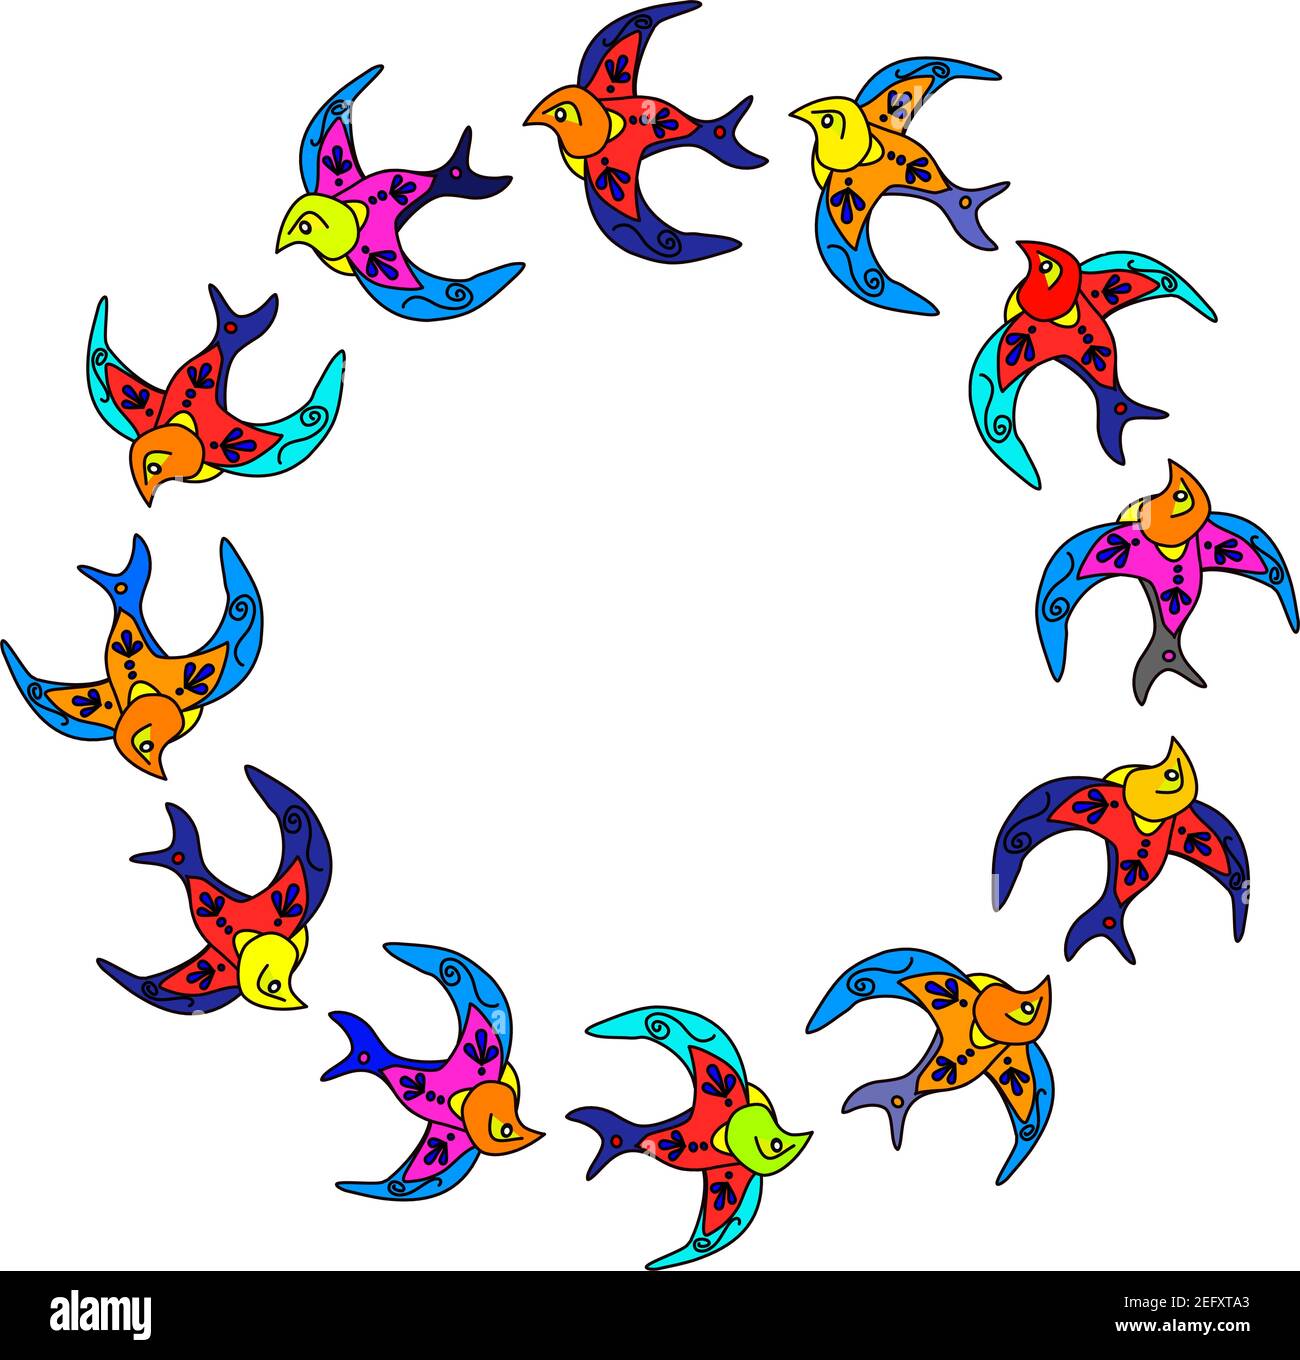 Grafico vettoriale di dodici swallows che volano in un cerchio su sfondo trasparente. Sulla base delle "Andorra" che abbiamo visto a Lisbona, in Portogallo Illustrazione Vettoriale